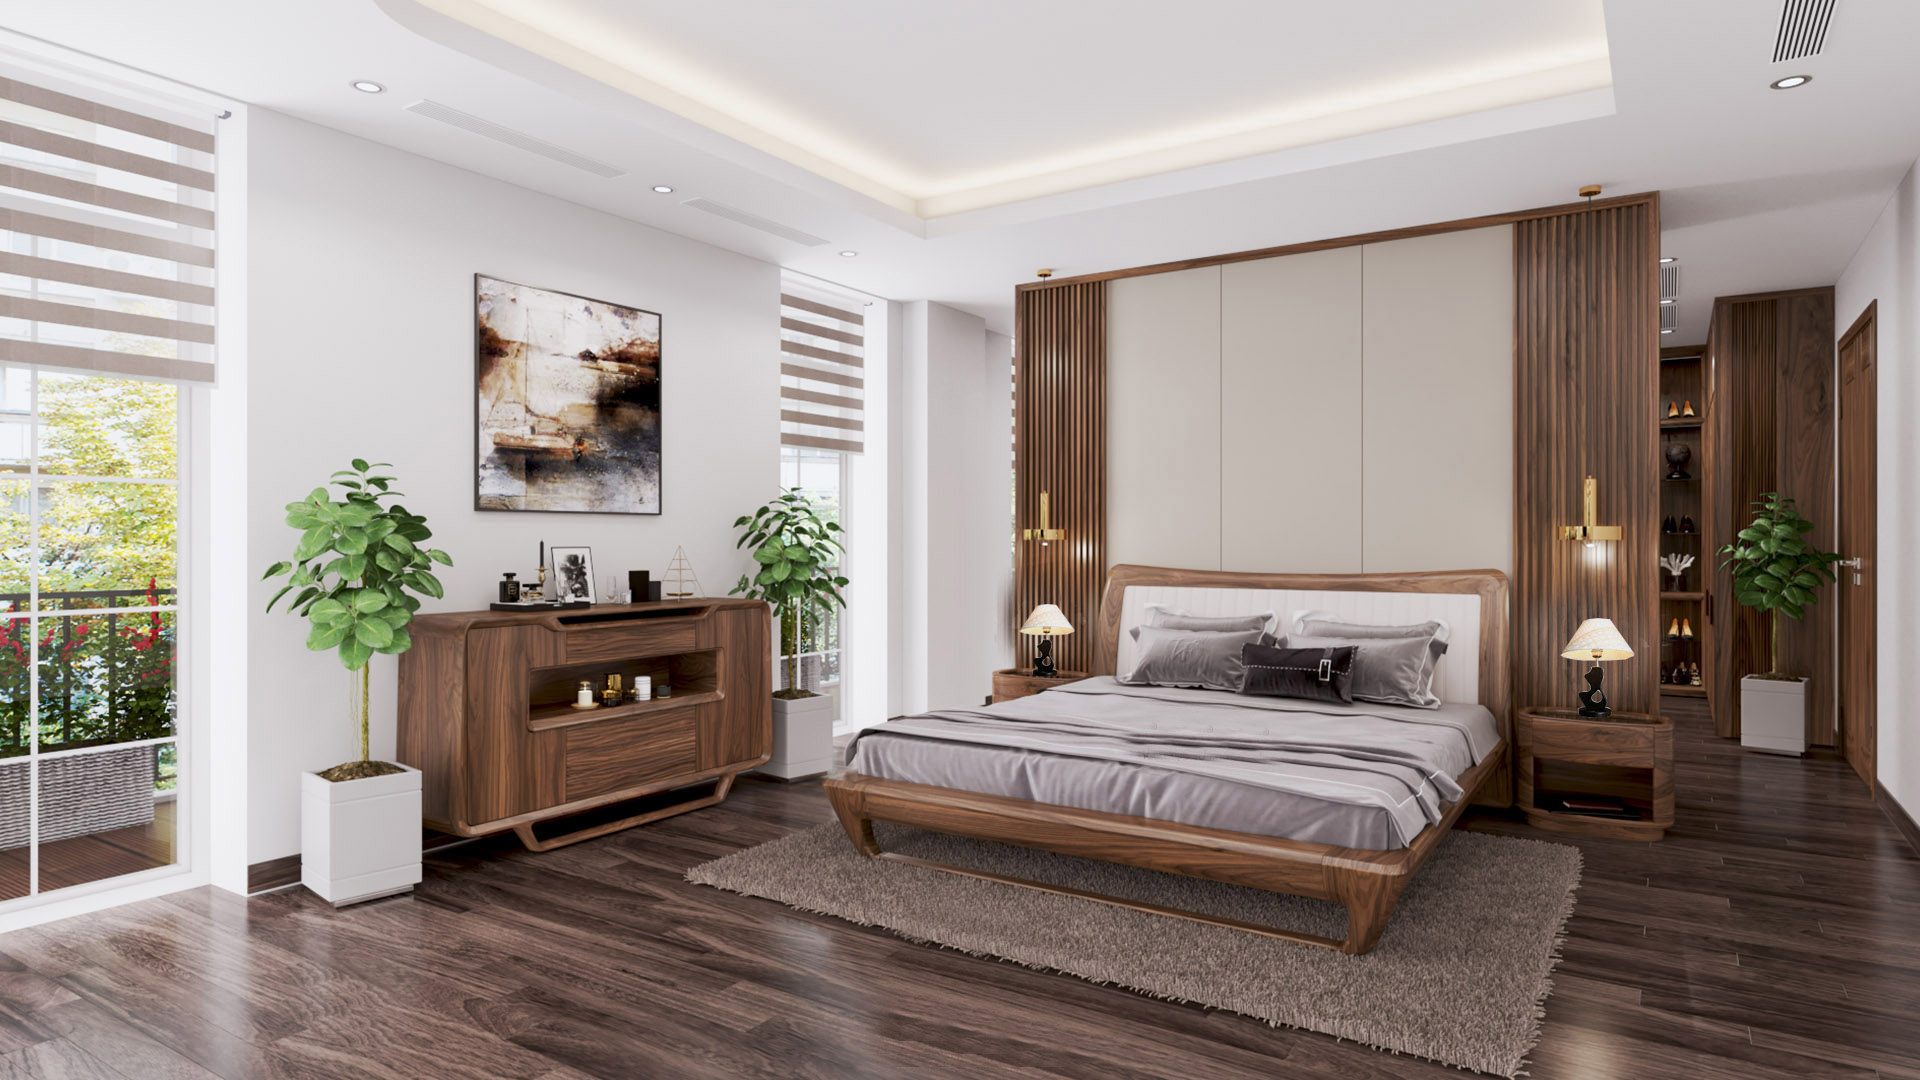 Phòng ngủ chung cư đẹp sang trọng, thiết kế hợp lý, tiện nghi